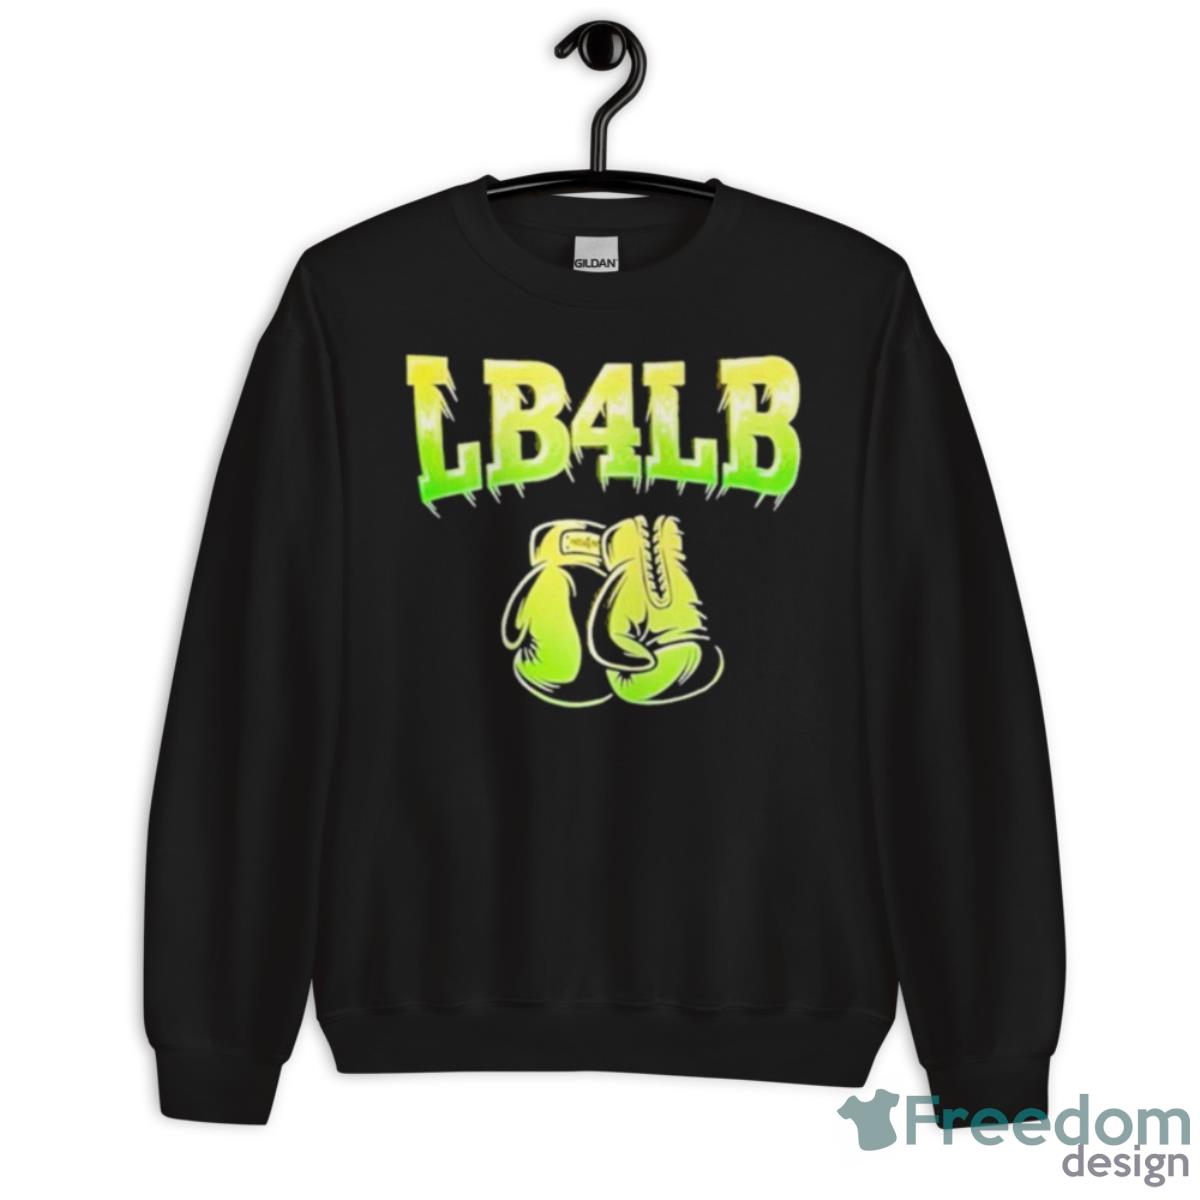 Lb4lb Shirt